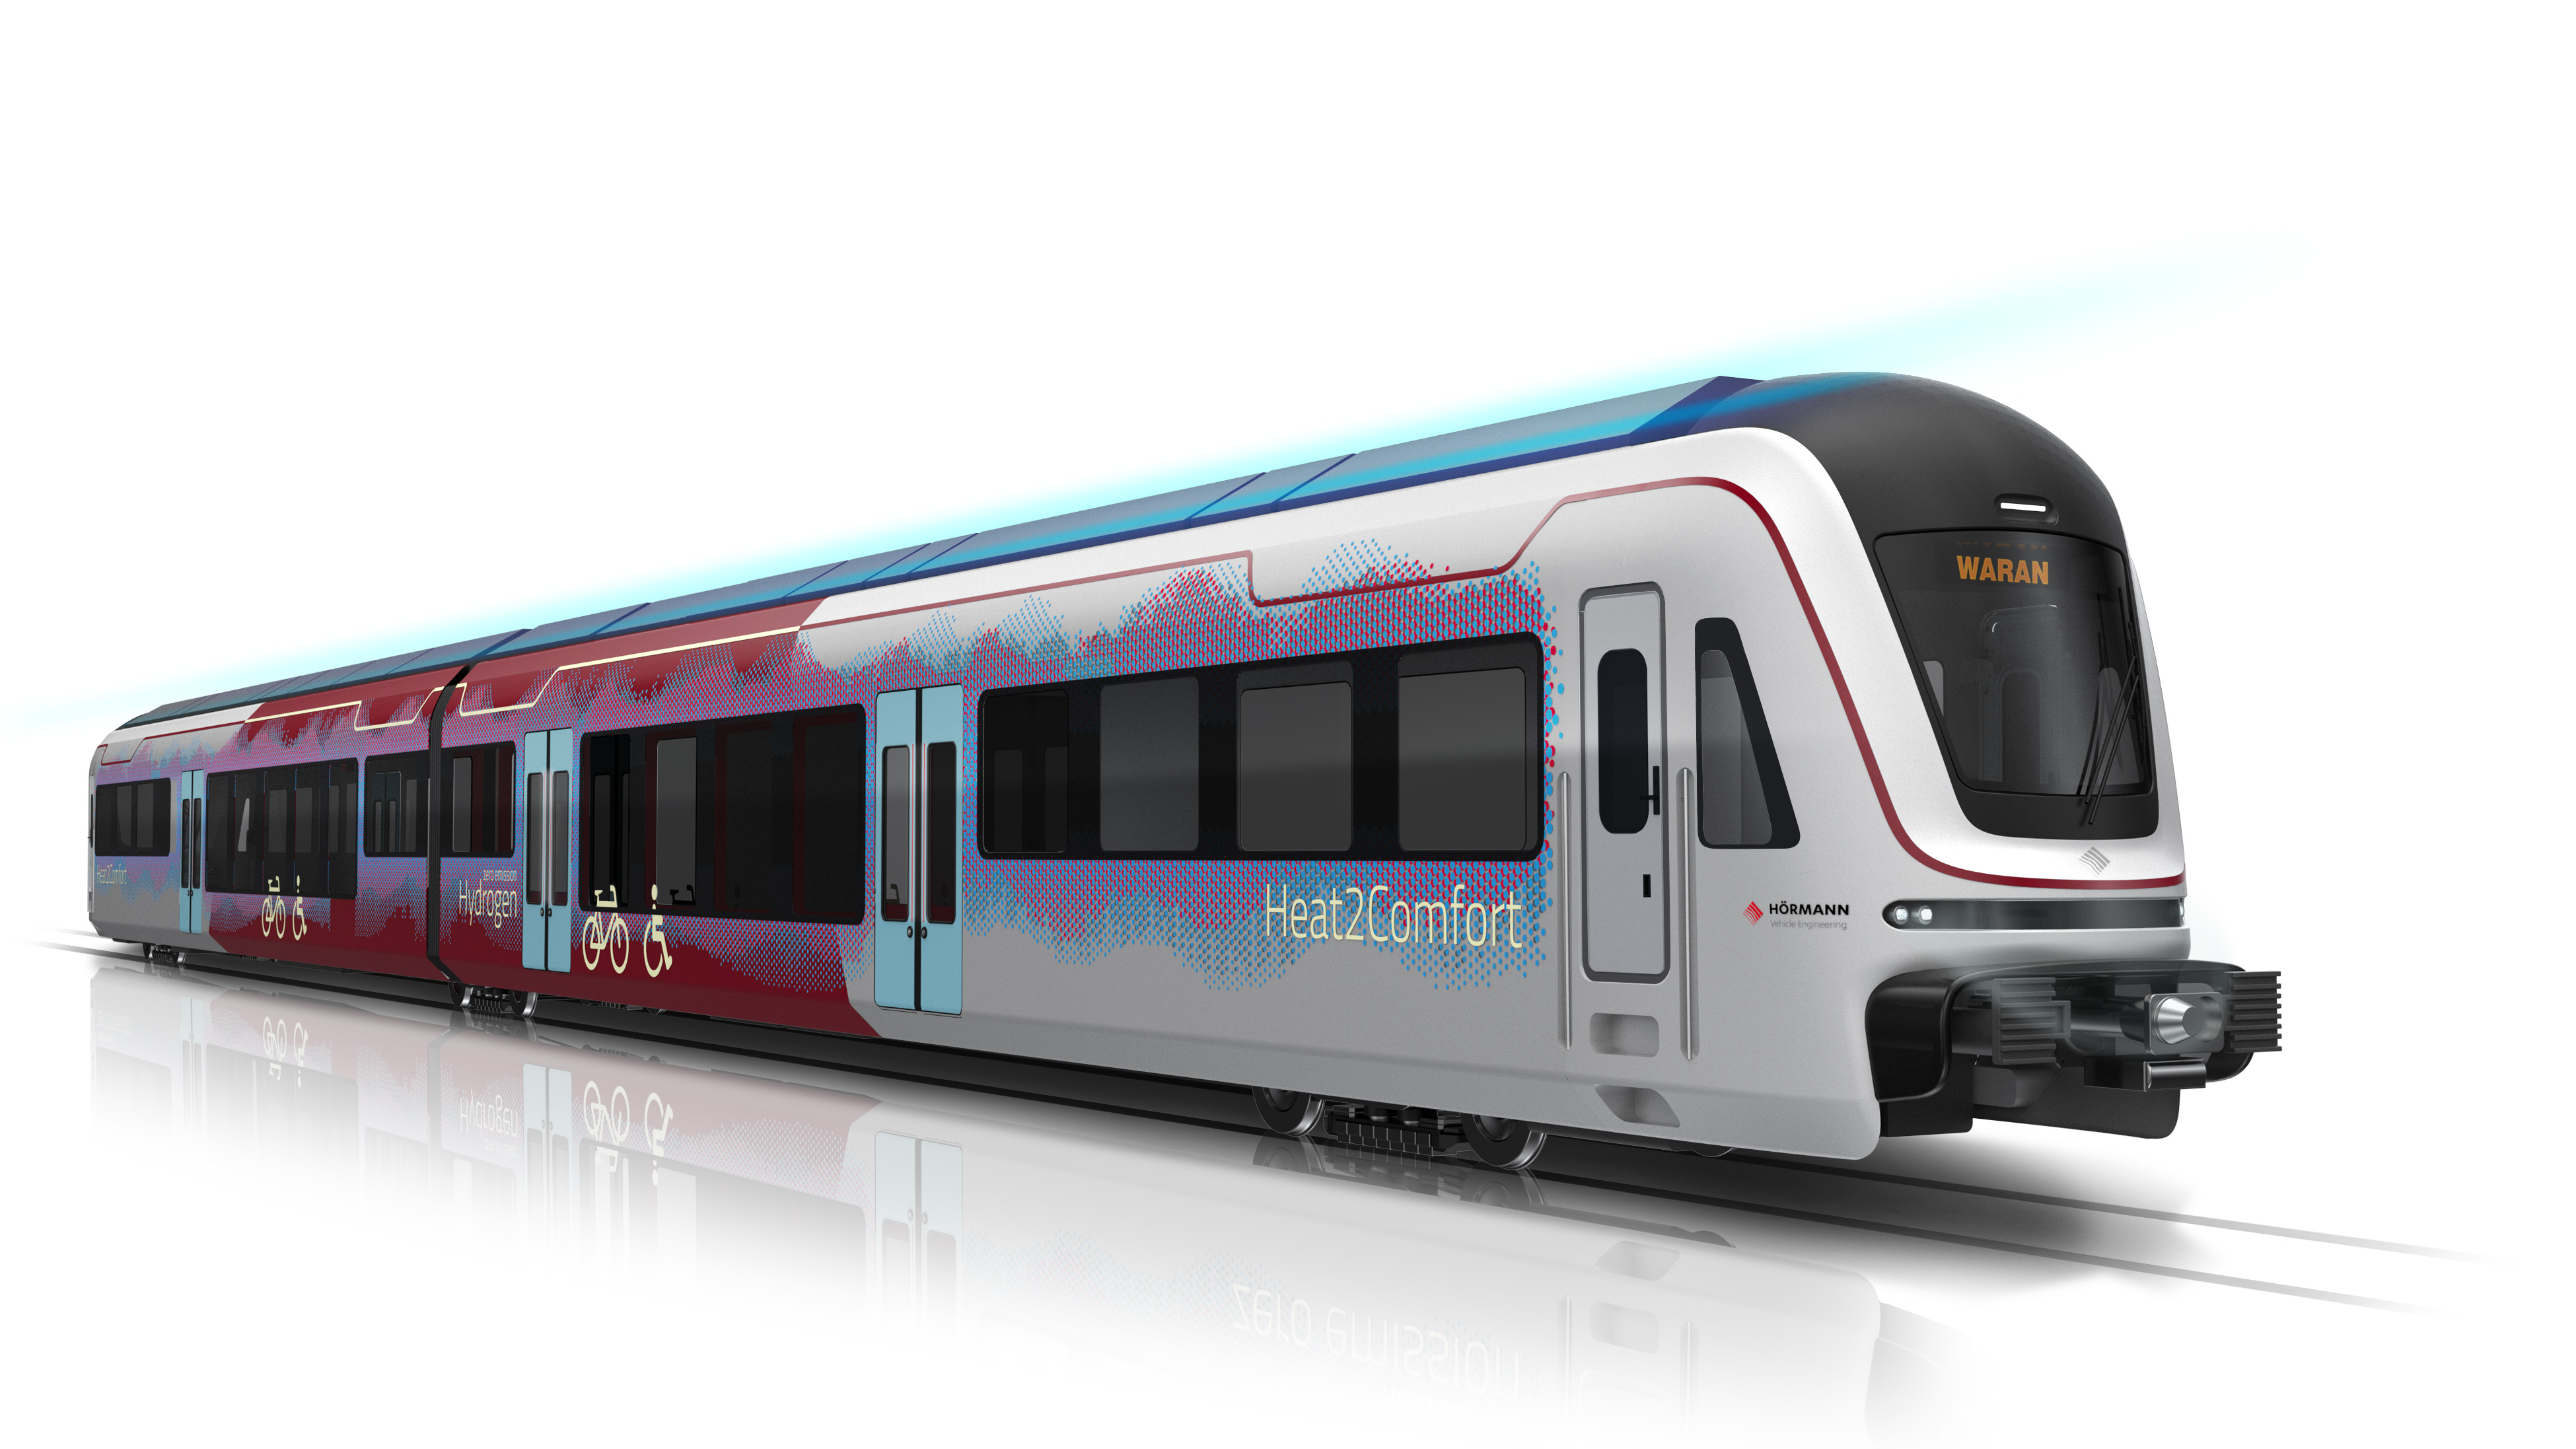 Bild 1: WARAN – Wasserstoff angetriebener Regionalzug mit Abwärme-Nutzung